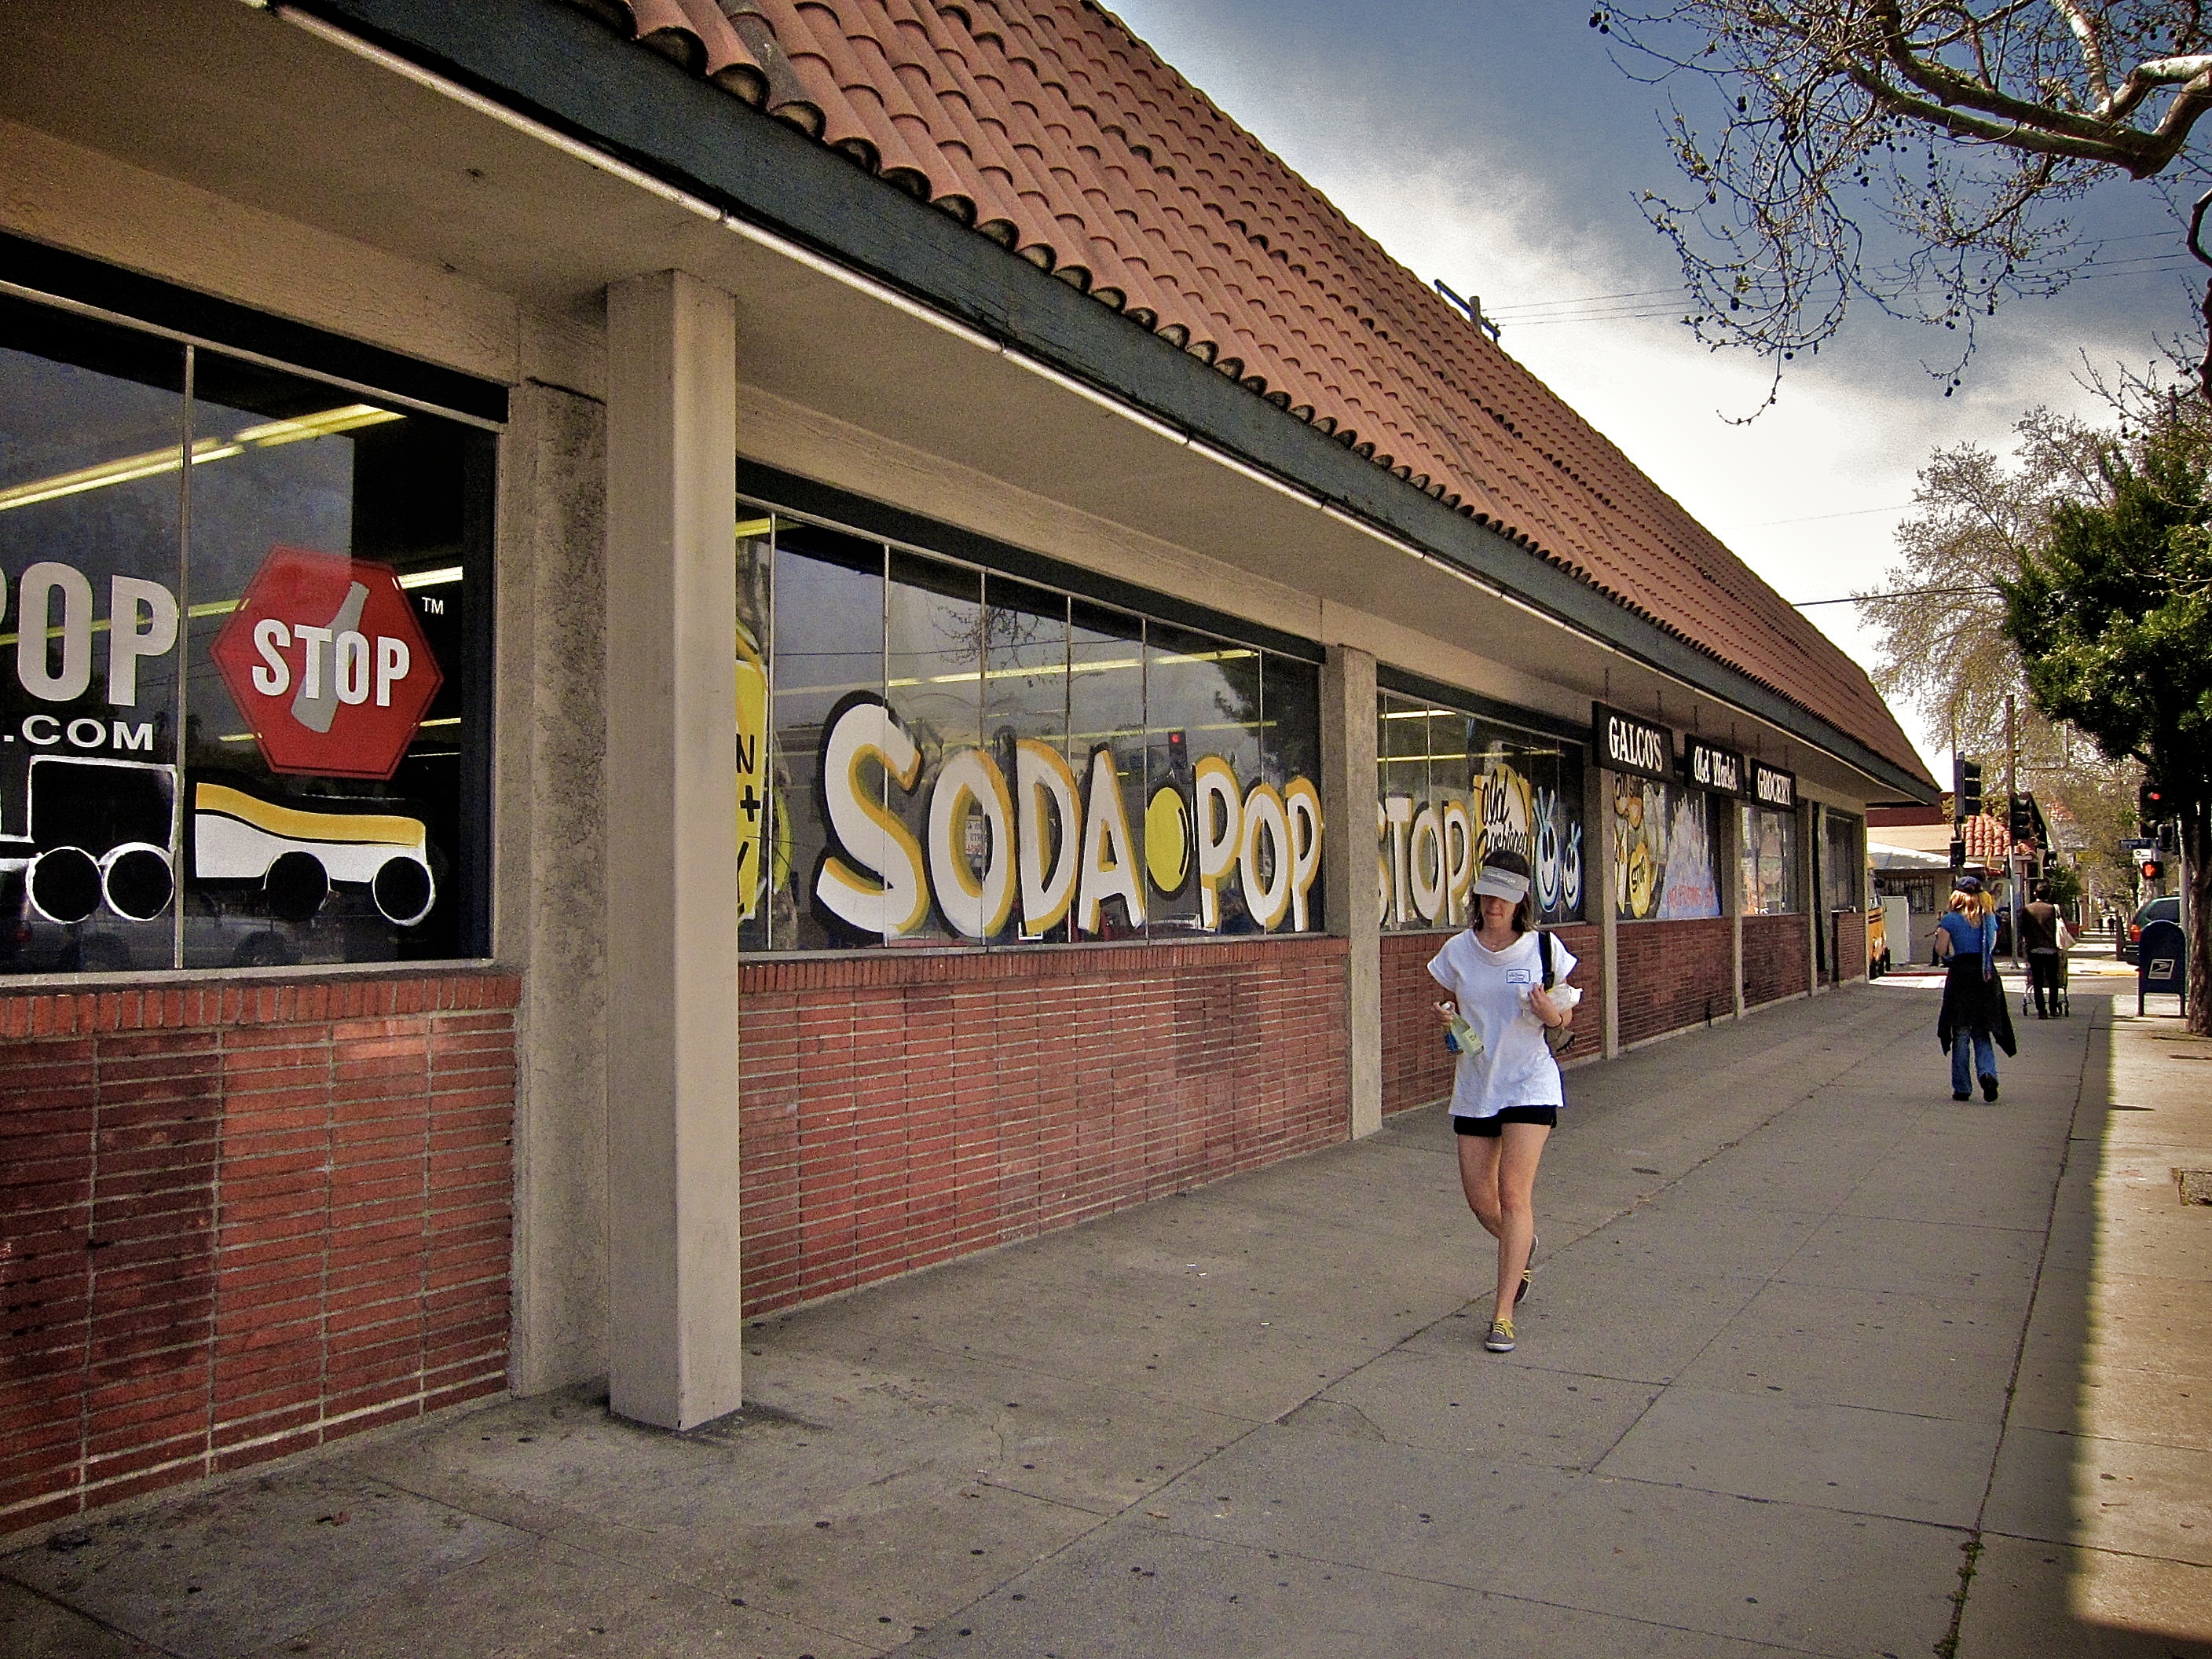 Galco's Soda Pop Stop -